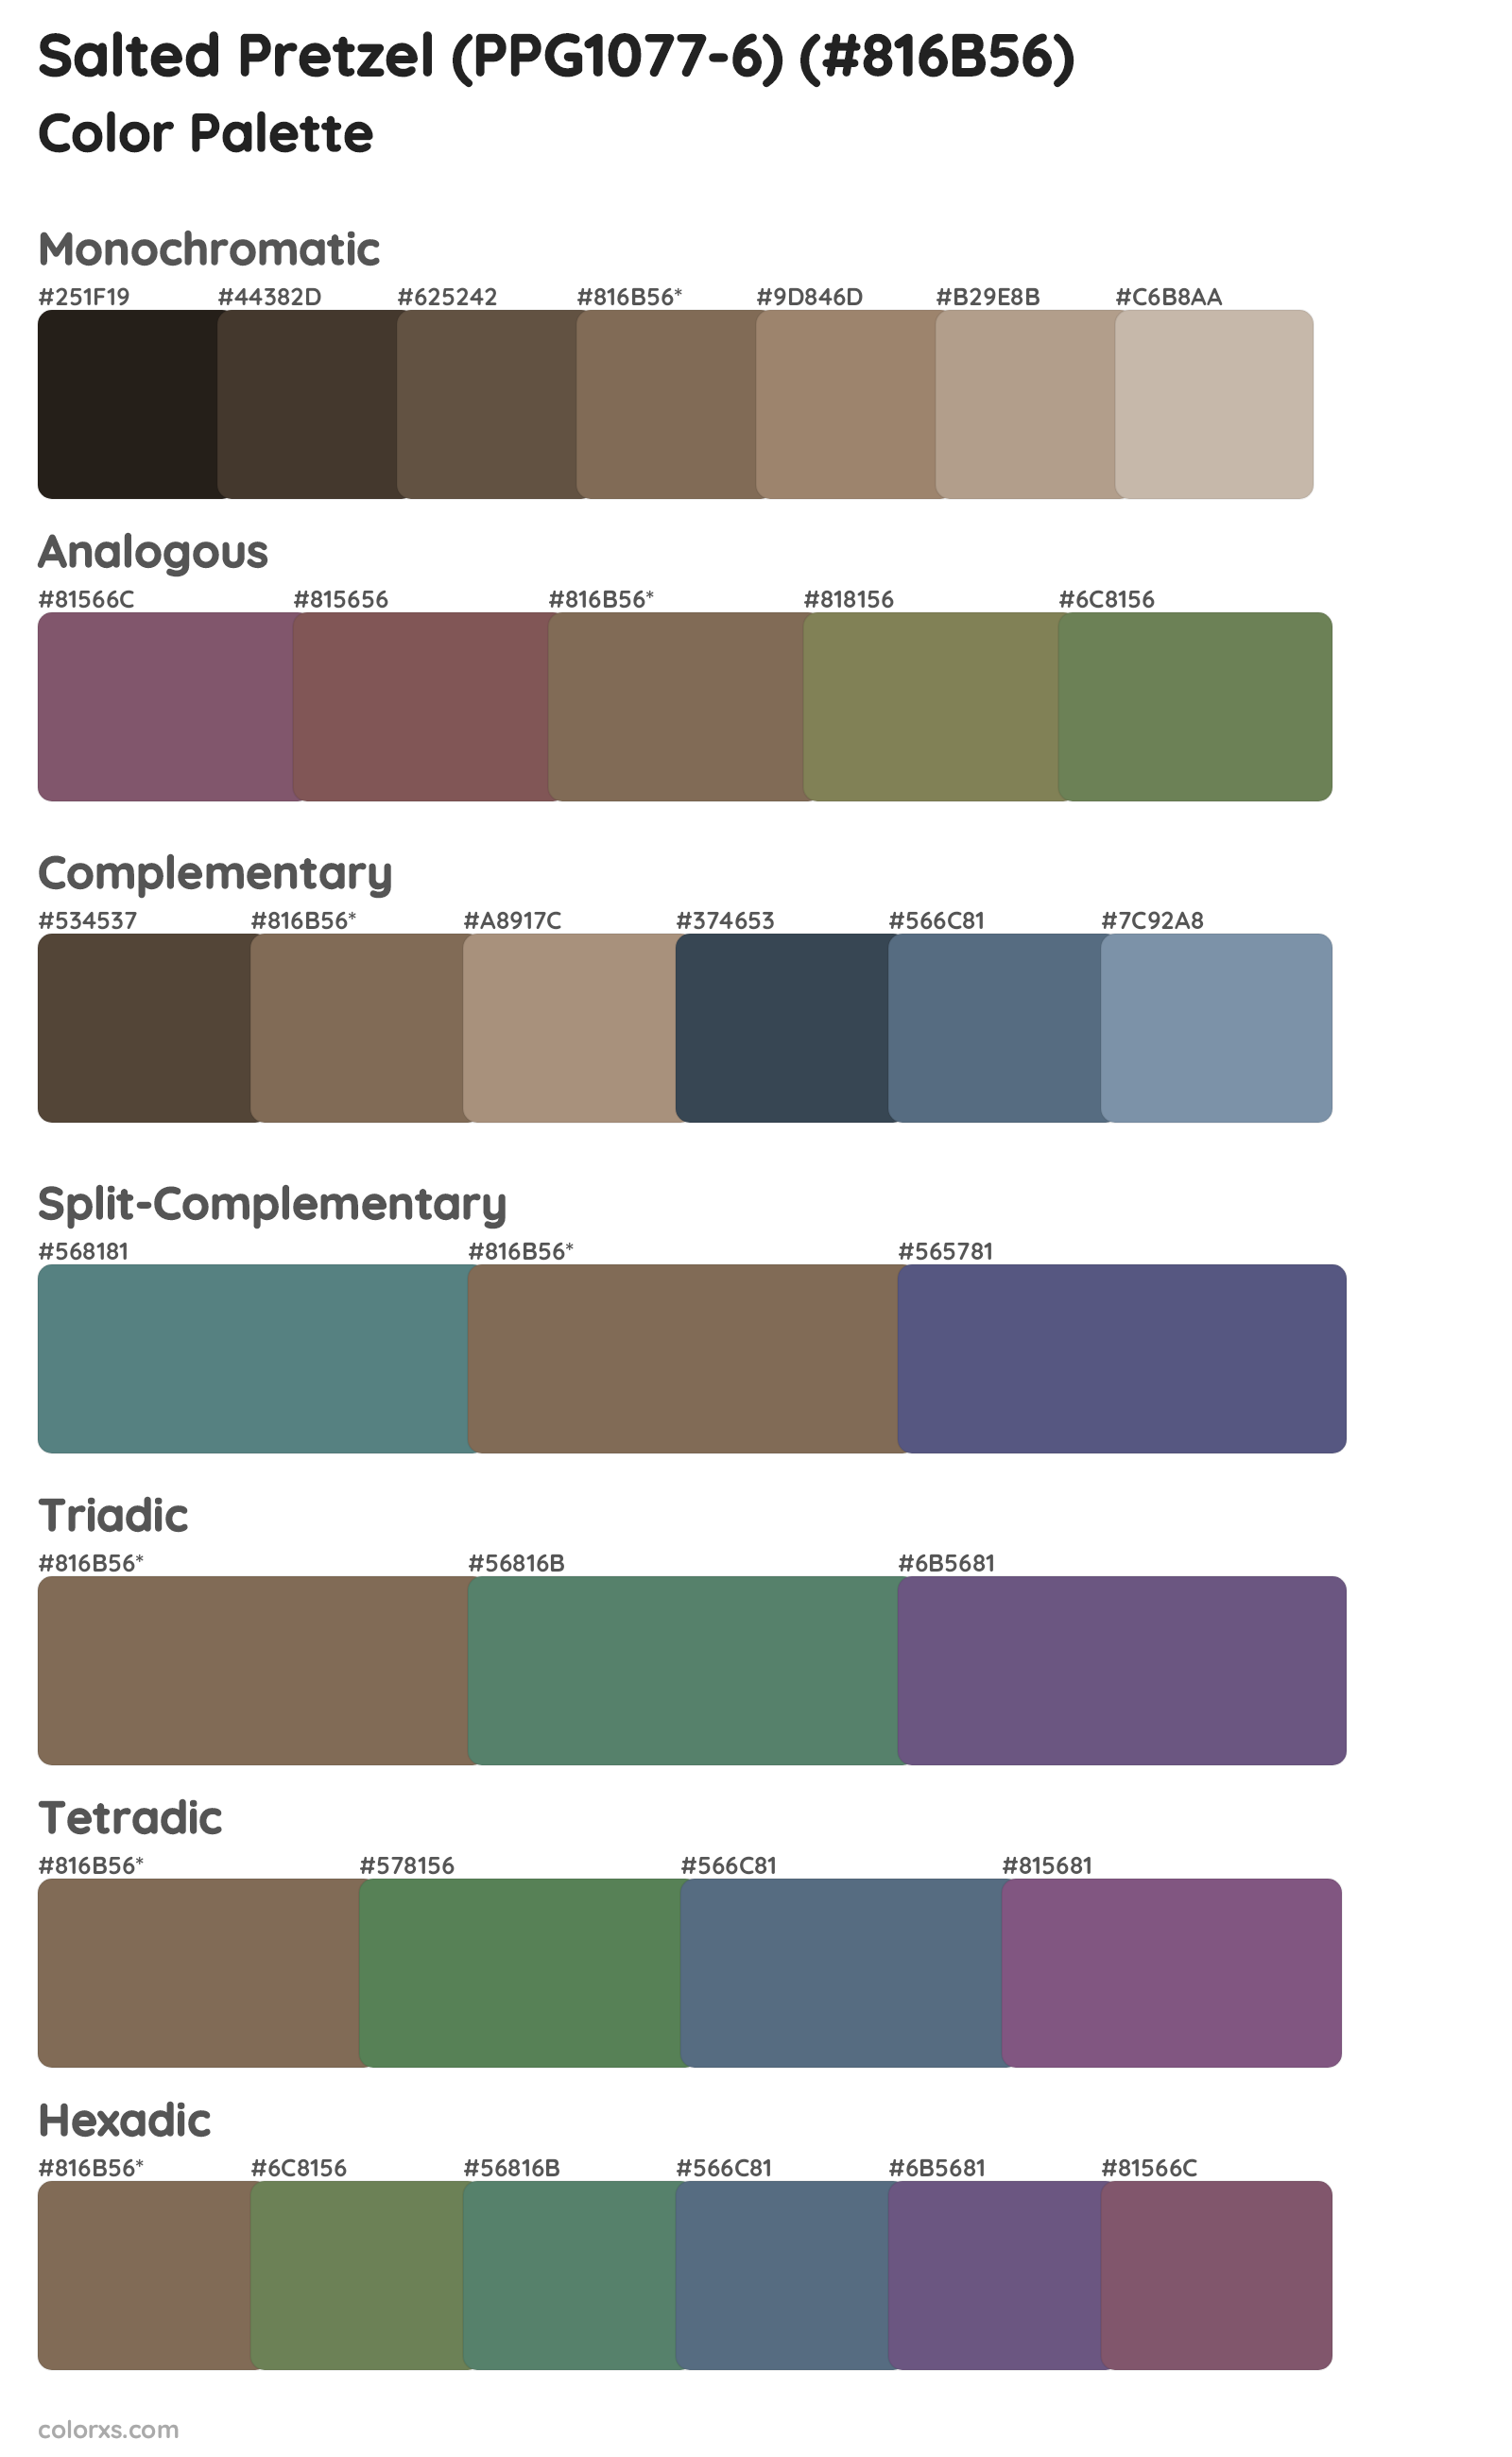 Salted Pretzel (PPG1077-6) Color Scheme Palettes